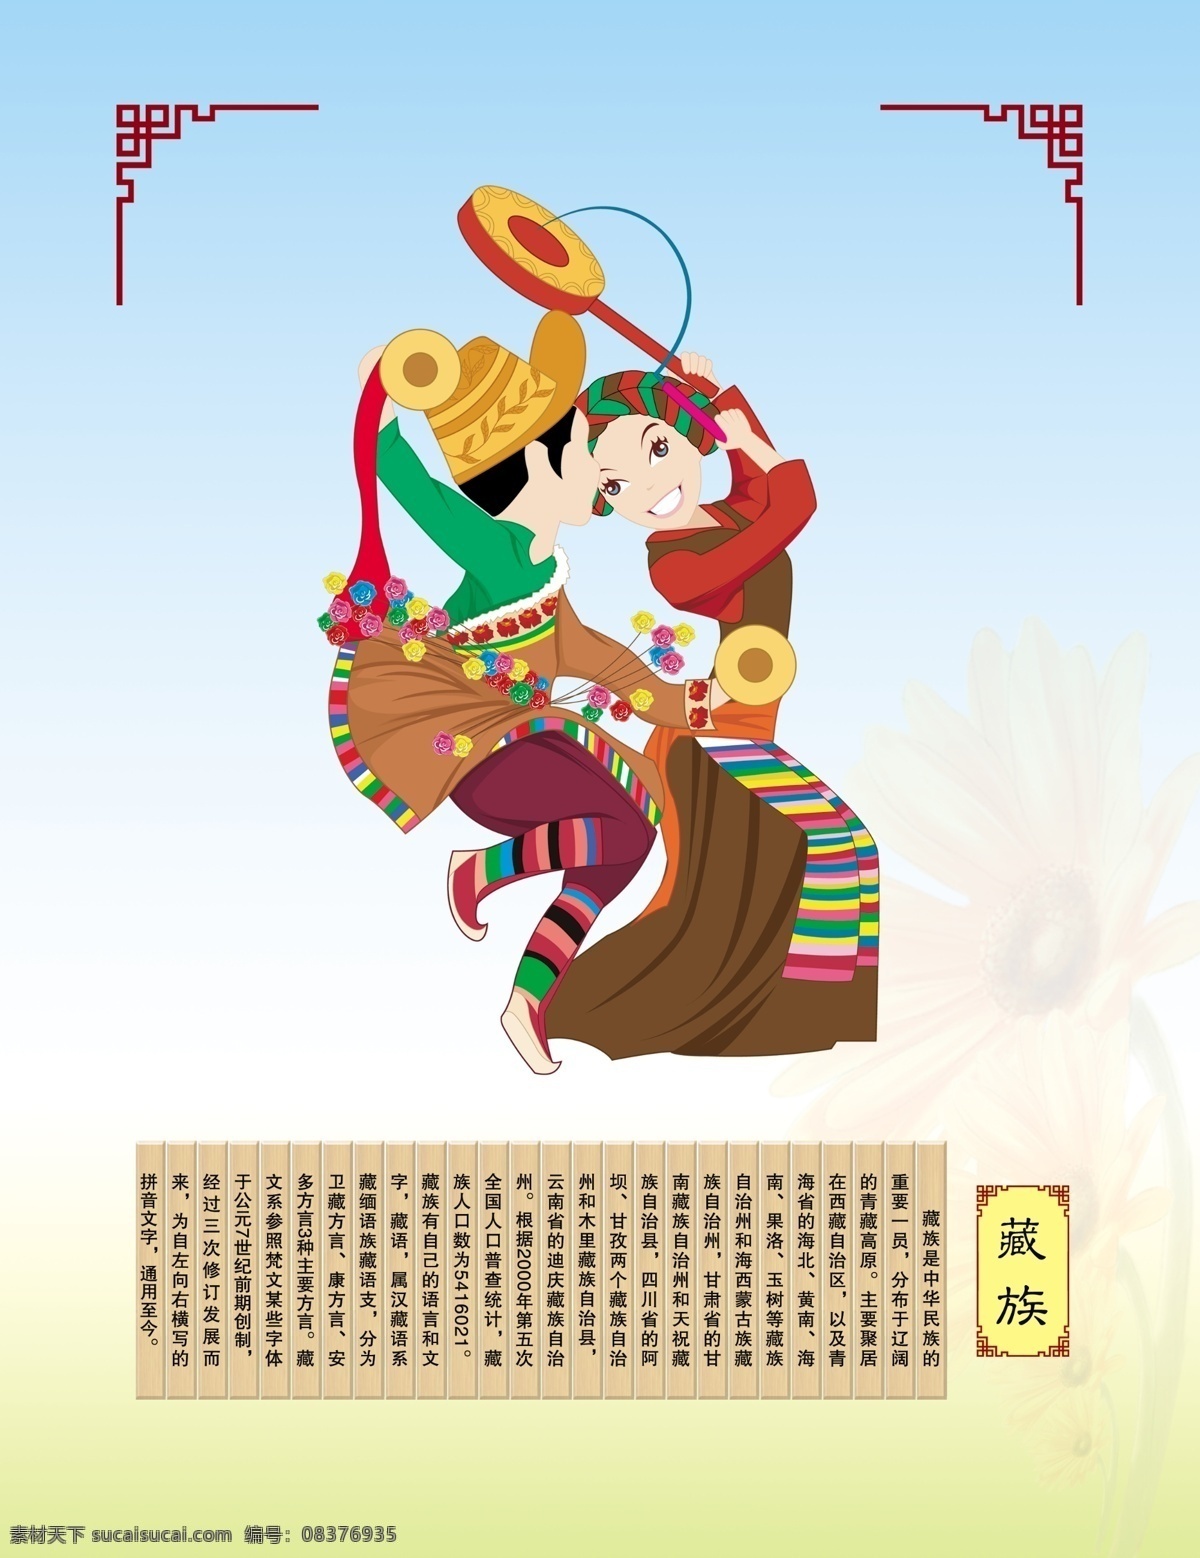 藏族 广告设计模板 民族文化 少数民族 源文件 展板模板 民族舞蹈 民族风情 藏族文化 psd源文件